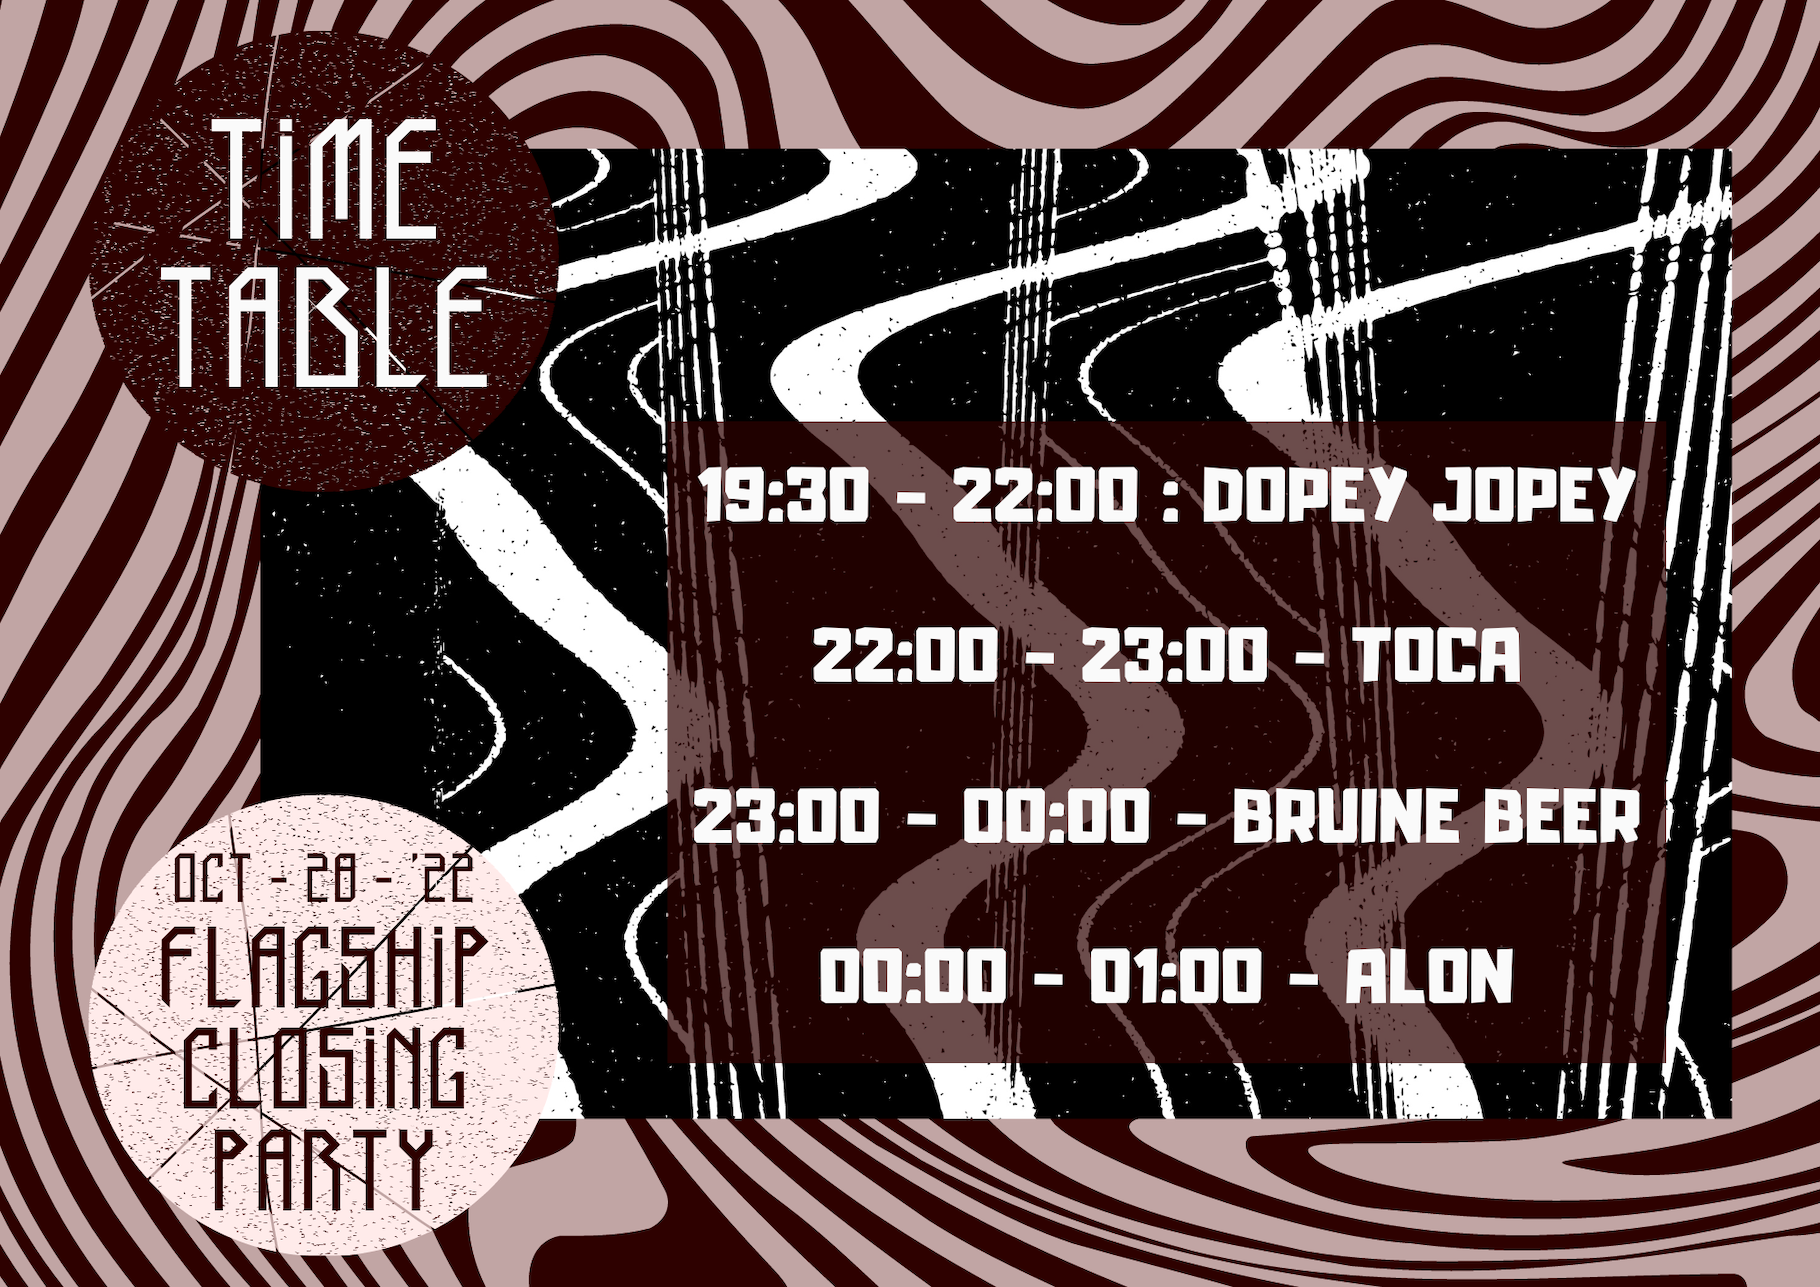 Timetable Flagship Closing Party waarop te zien is welke DJ's er draaien.